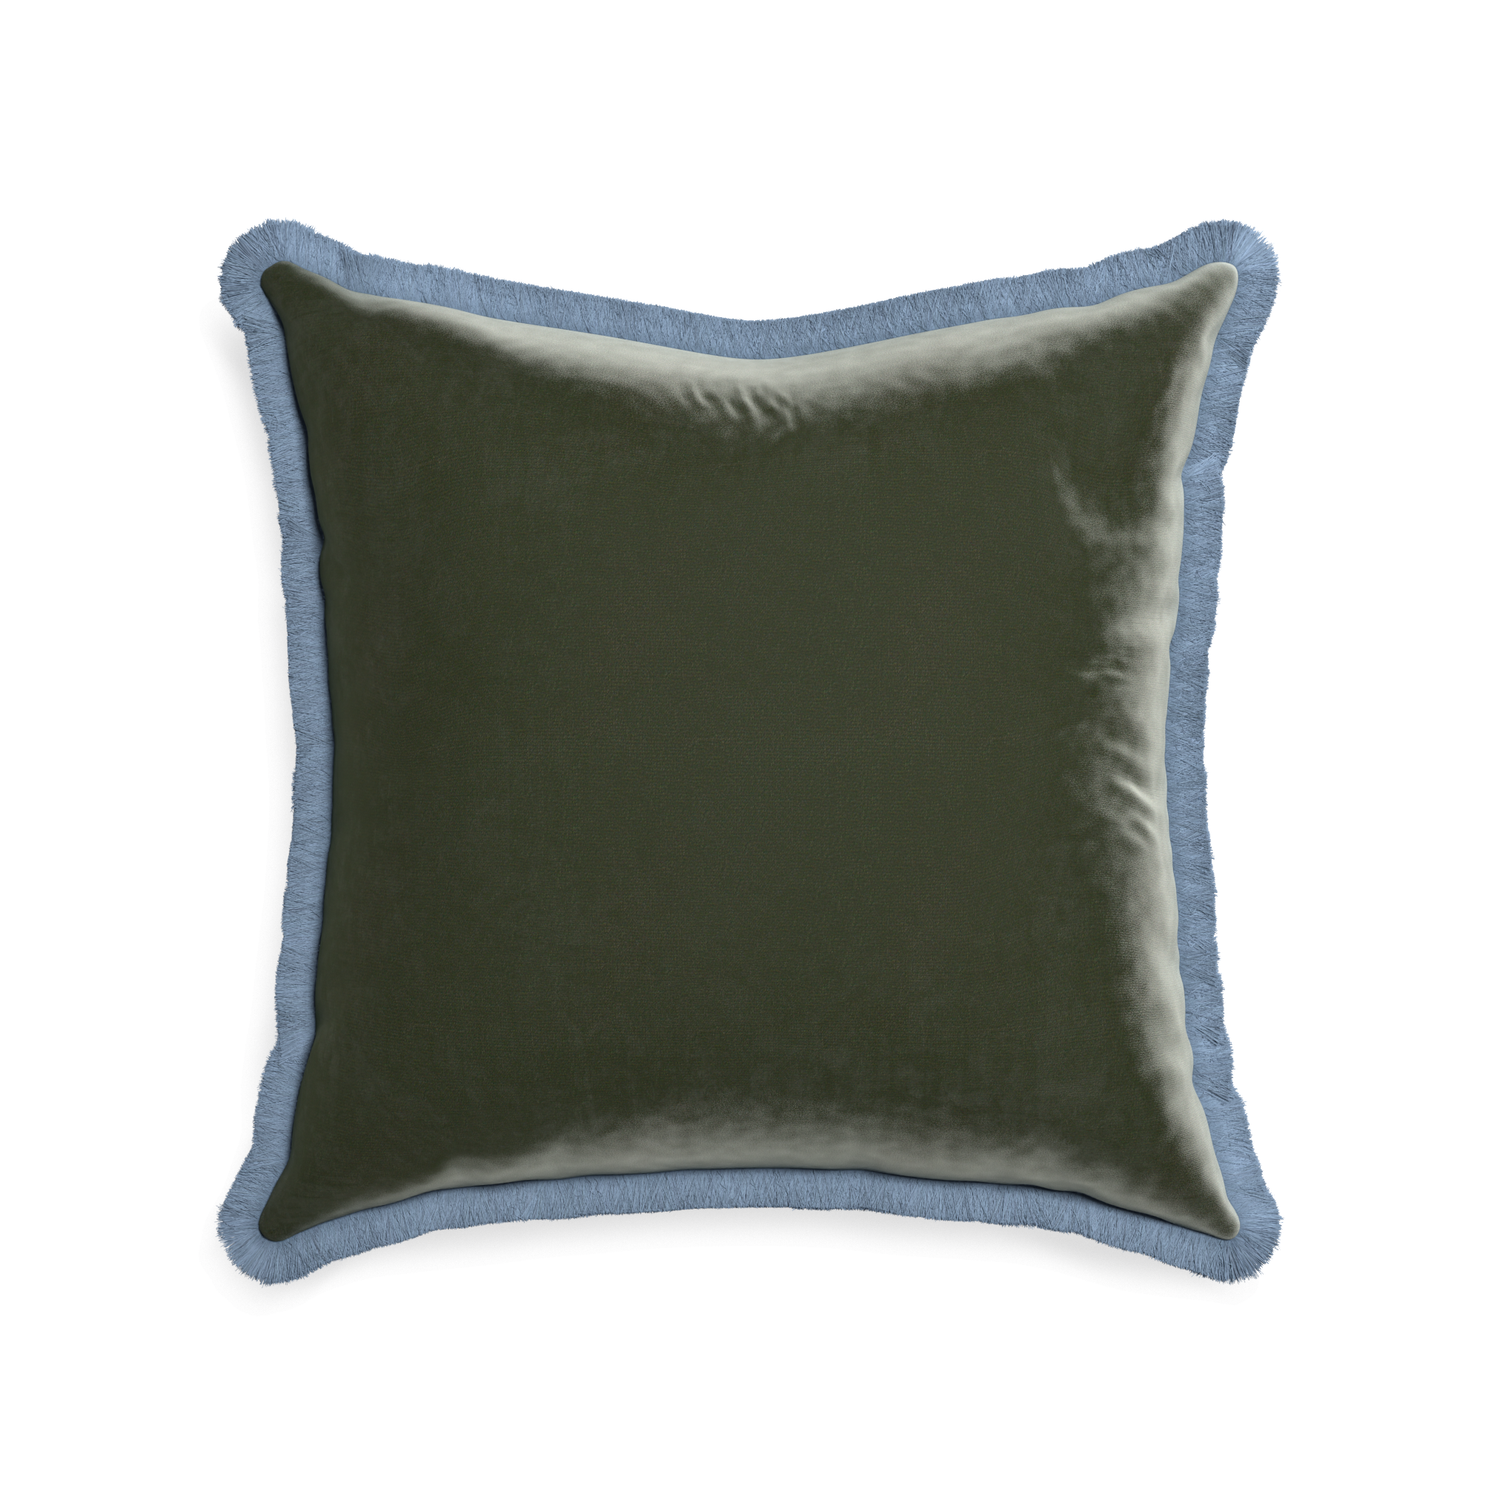 22-square fern velvet custom pillow with sky fringe on white background